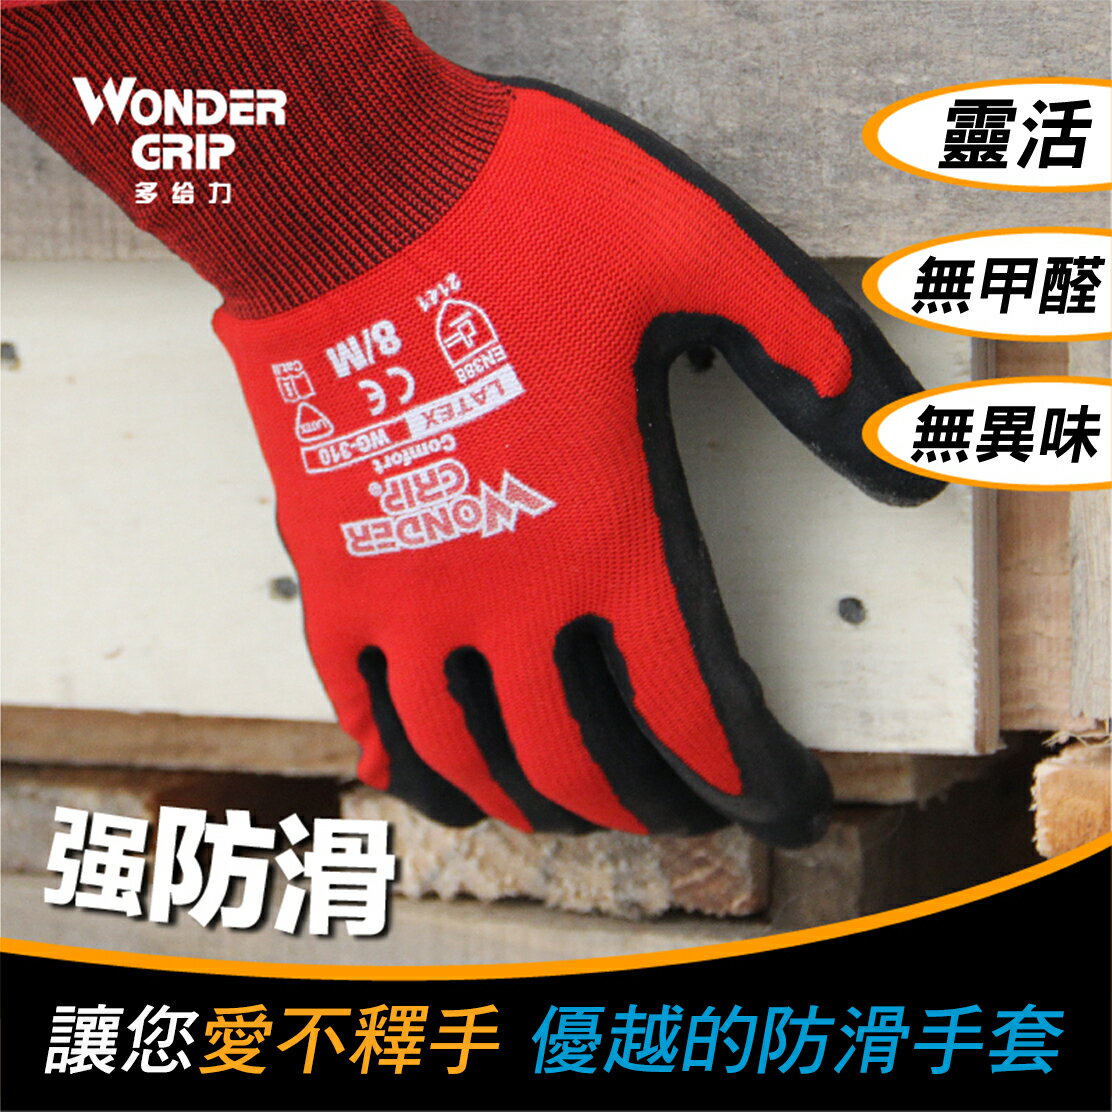 【哇襪手套~現貨】Wonder Grip® 多給力™#WG-310 Comfort-舒適止滑手套系